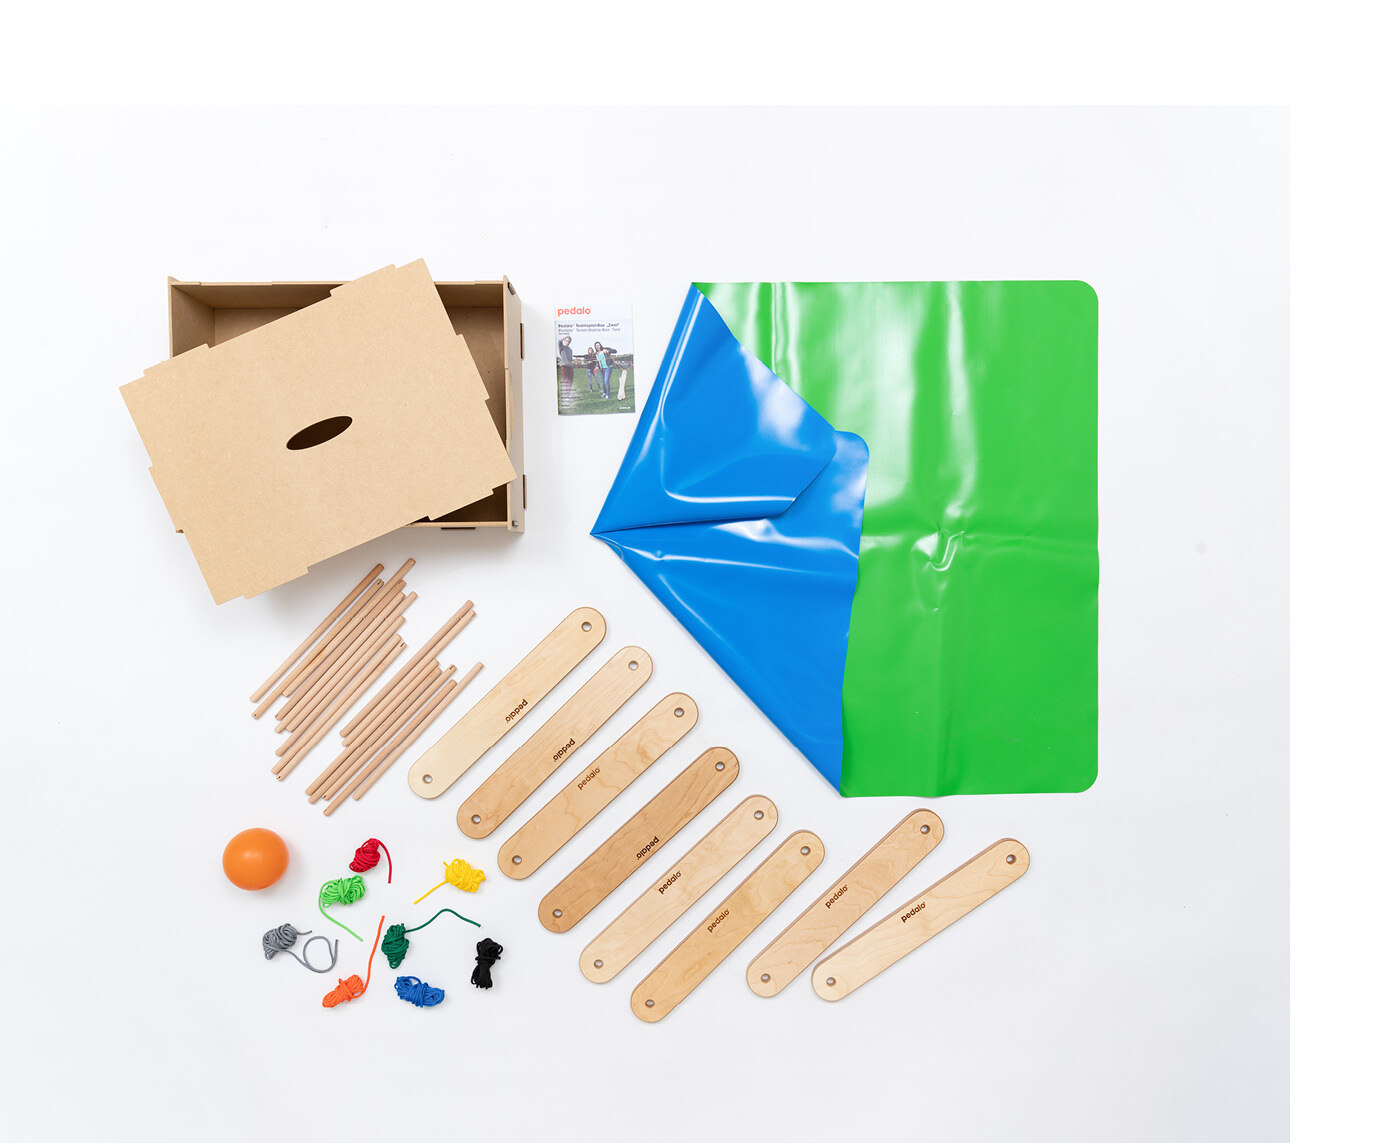 Rundstäbe, Holzelemente, Seile, ein Ball und eine farbige Kunststoffplane liegen geordnet nebeneinander.